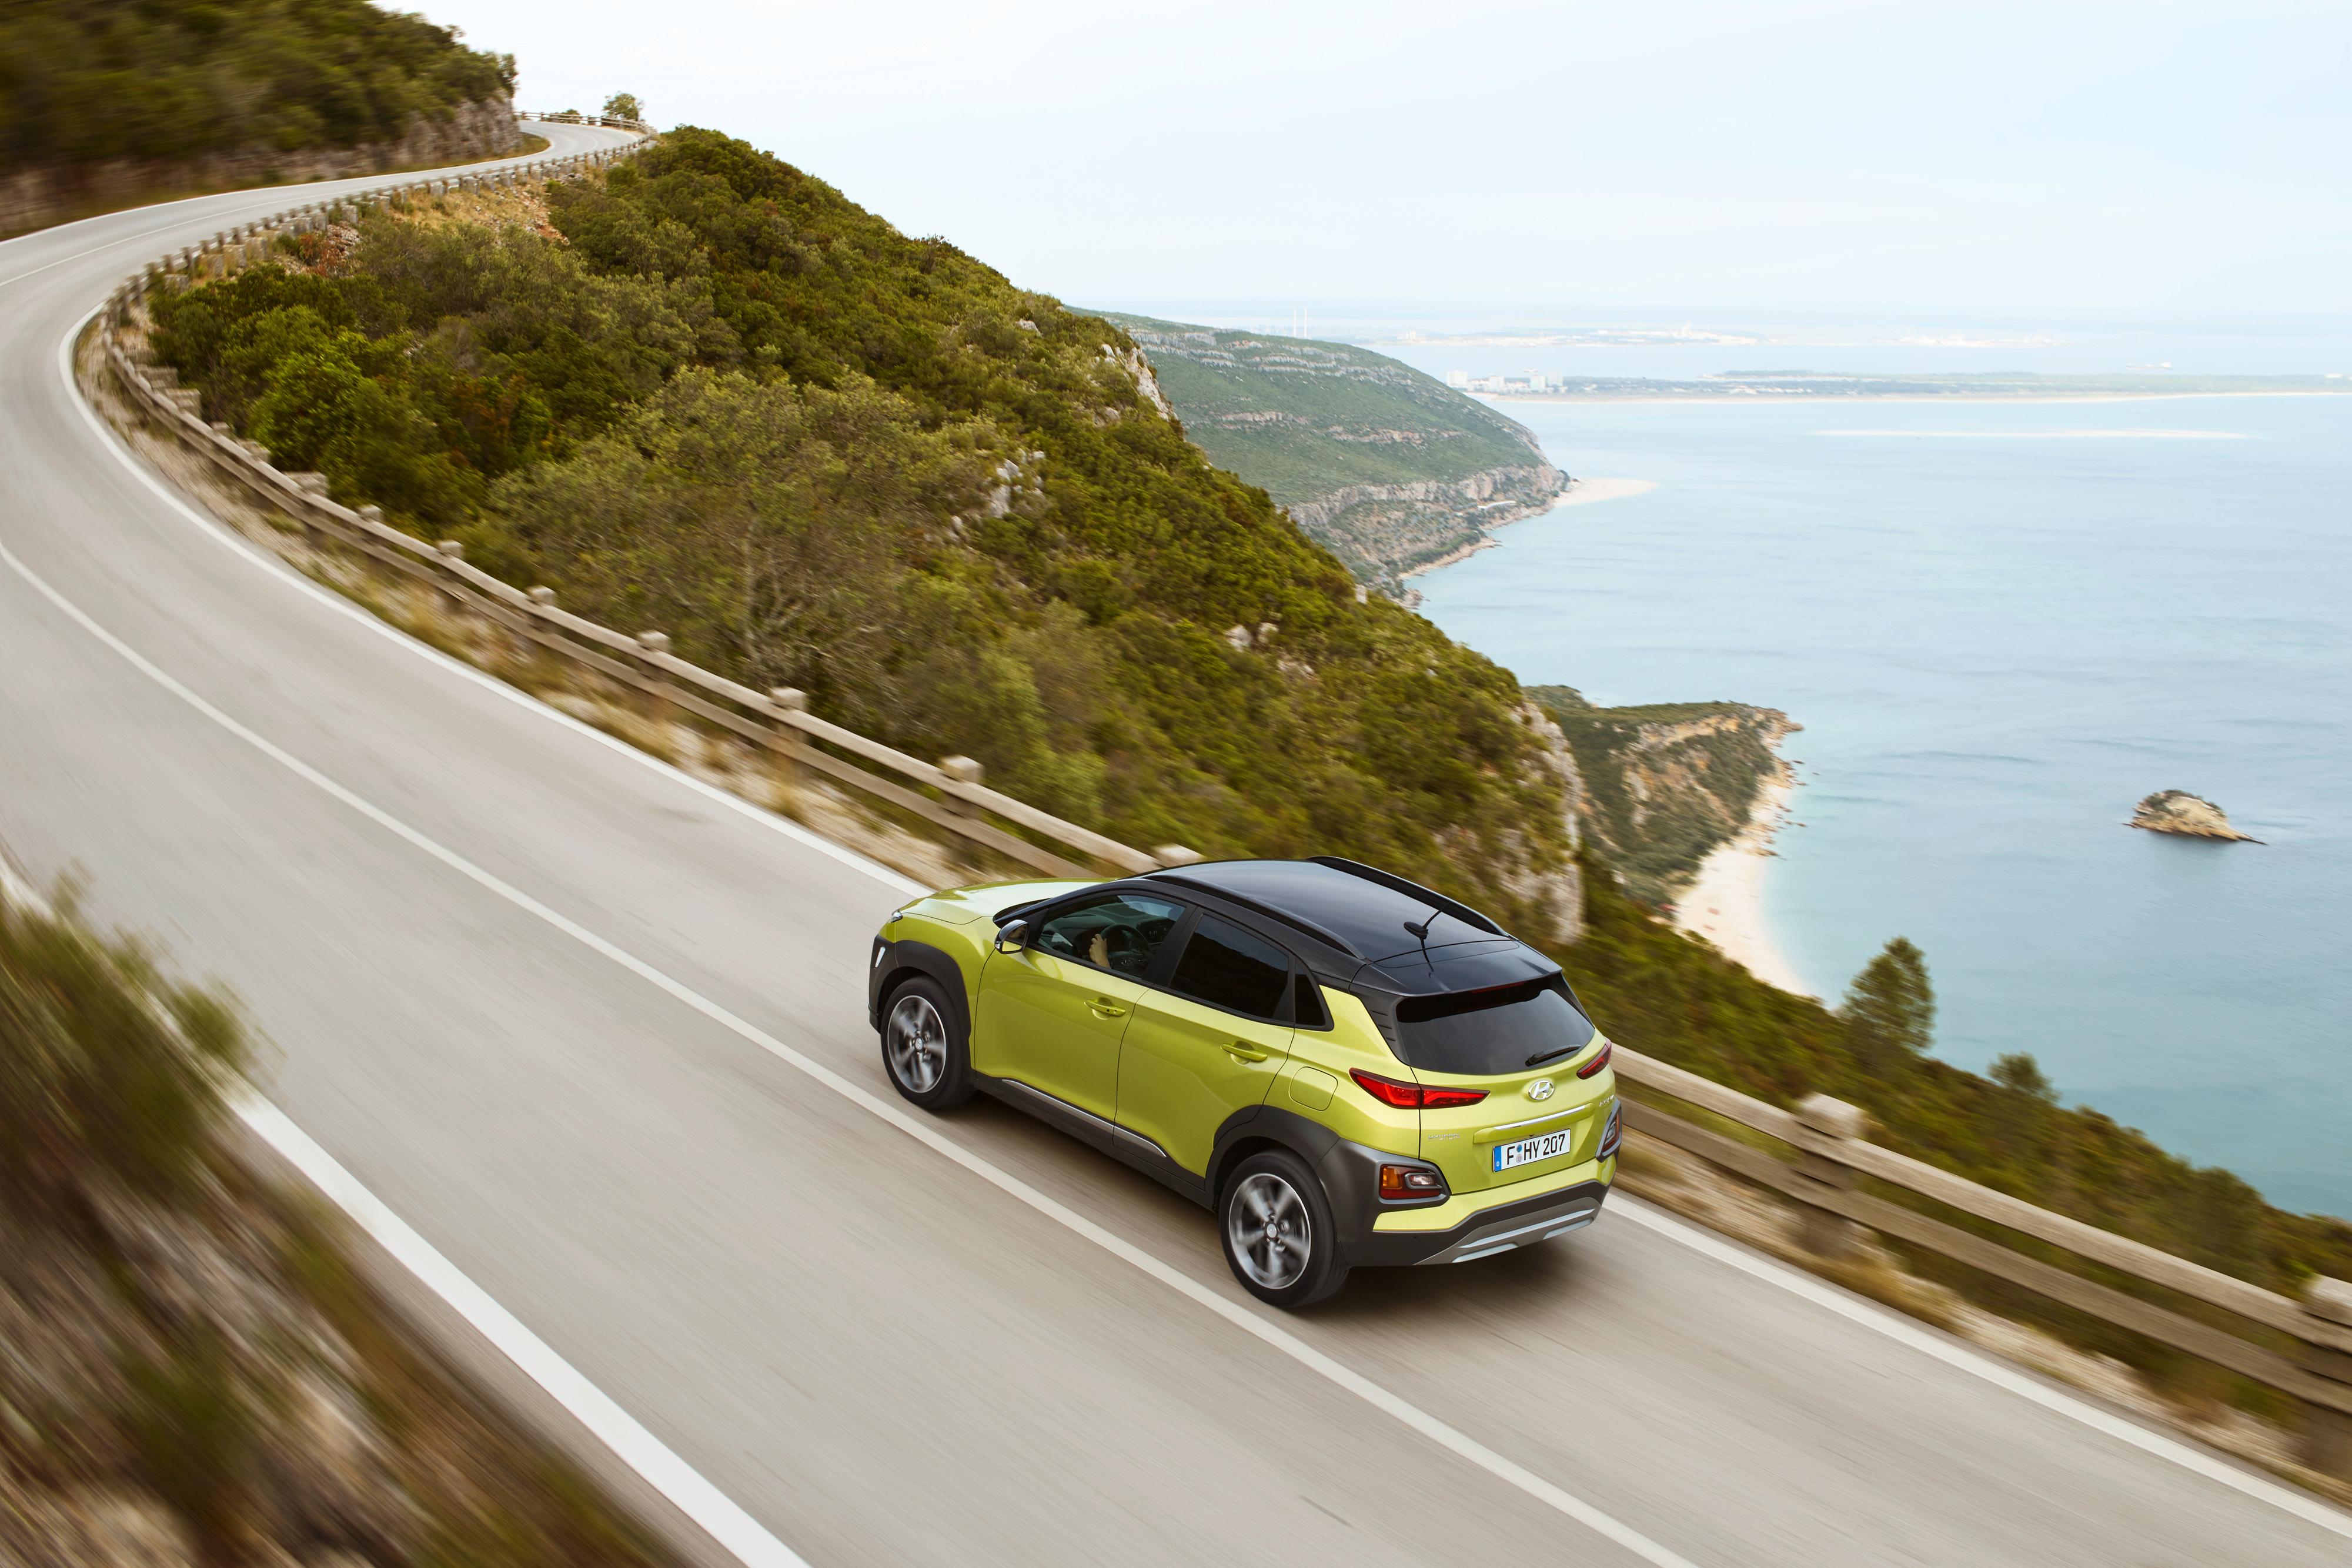 Kona er den første fullelektriske kompakt-SUV-en på markedet, ifølge Hyundai.